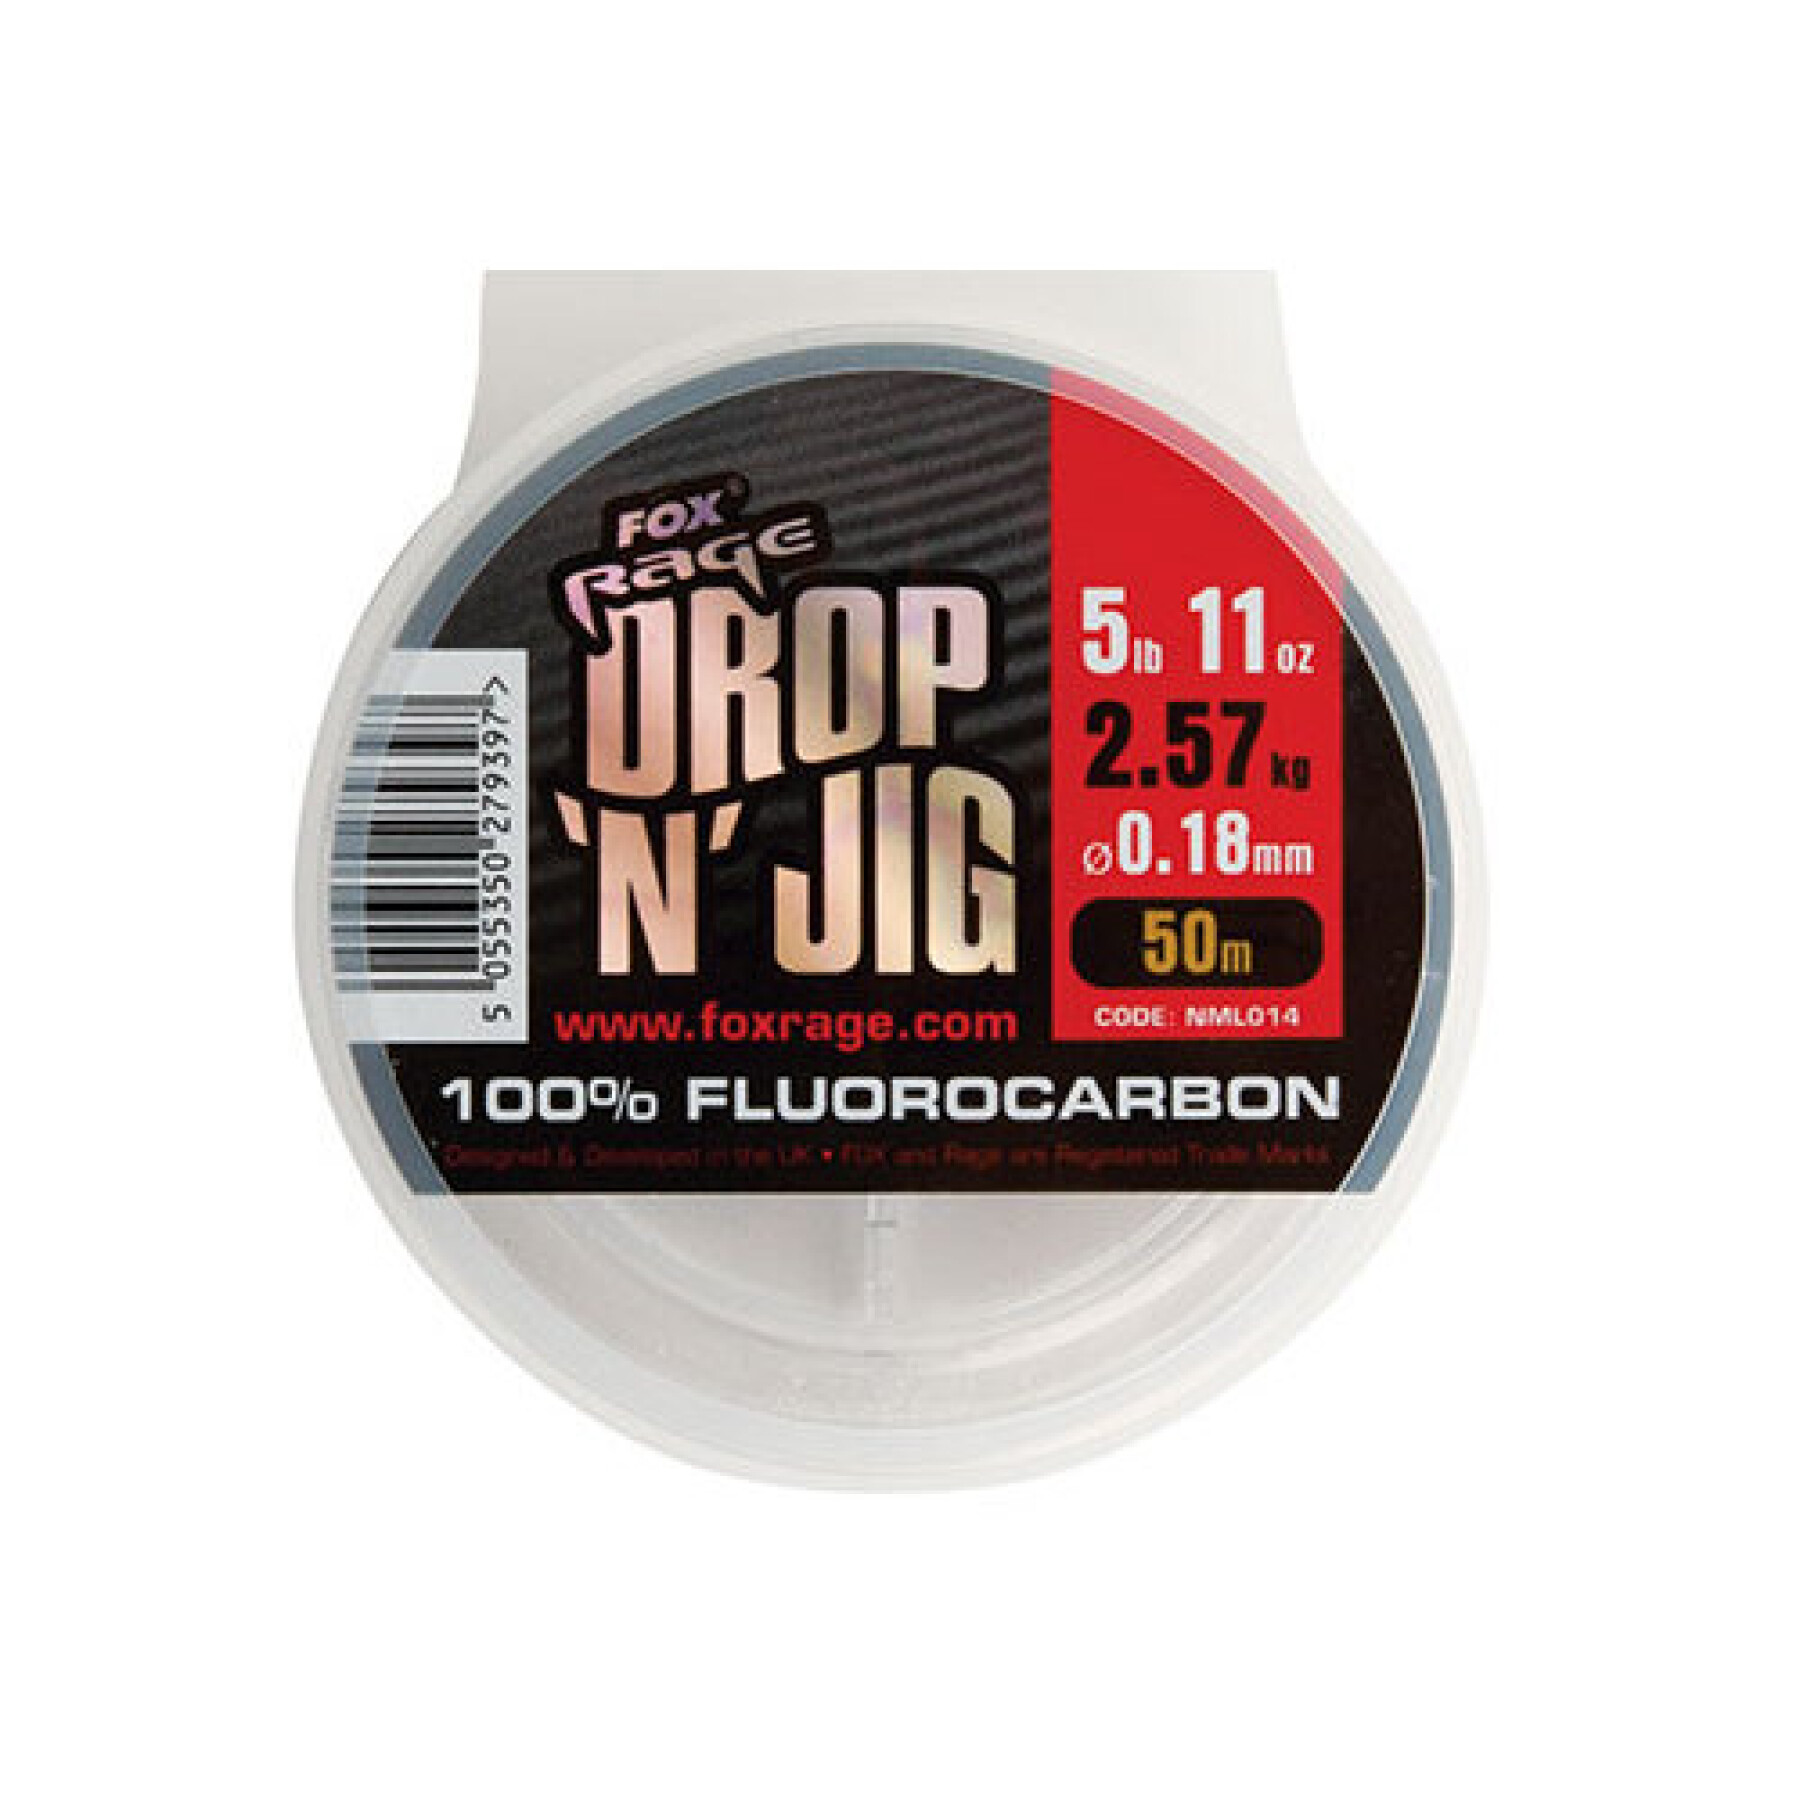 Fluorkarbon Fox Rage drop & jig 6.28kg / 13.84lb x 50m